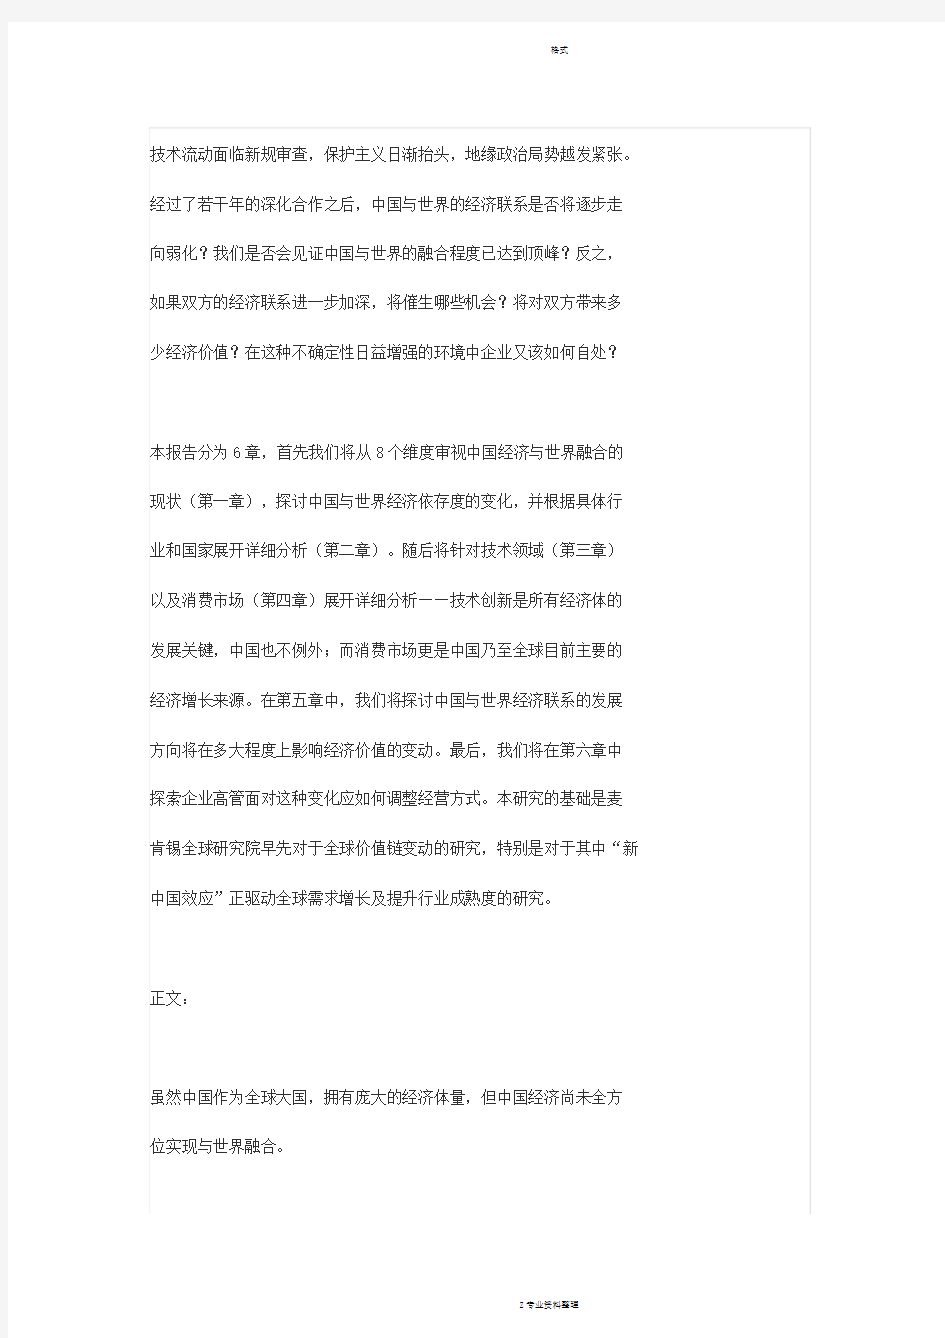 麦肯锡2019中国报告(完整收藏版)